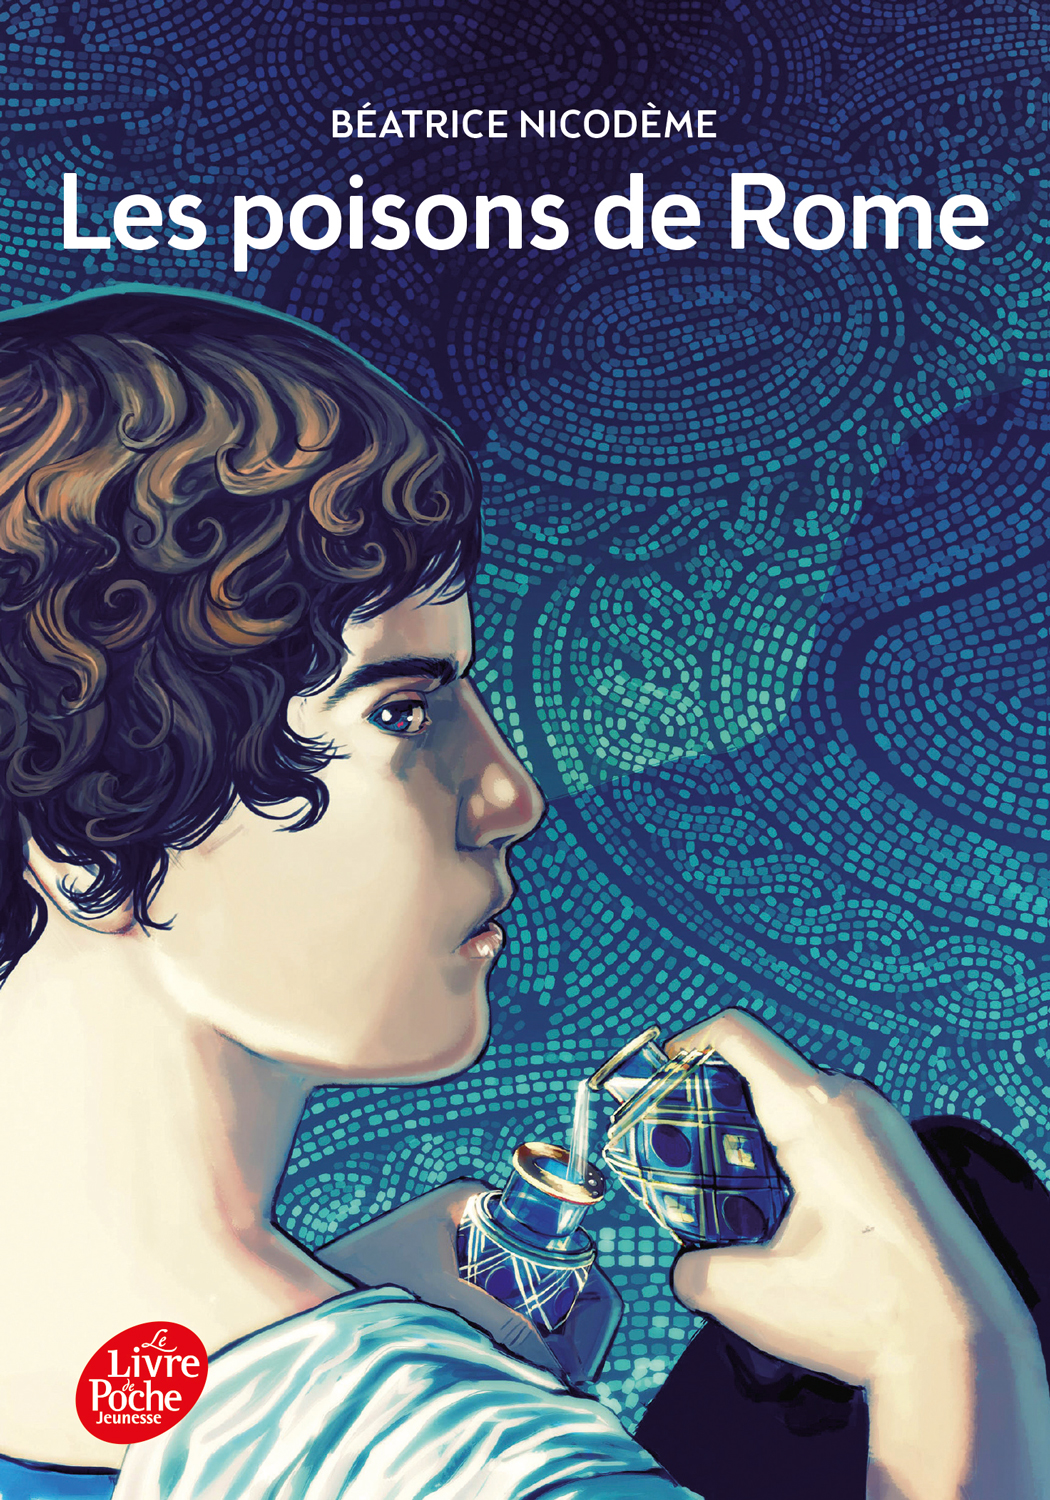 Beatrice Nicodeme autrice couverture du roman Les poisons de Rome